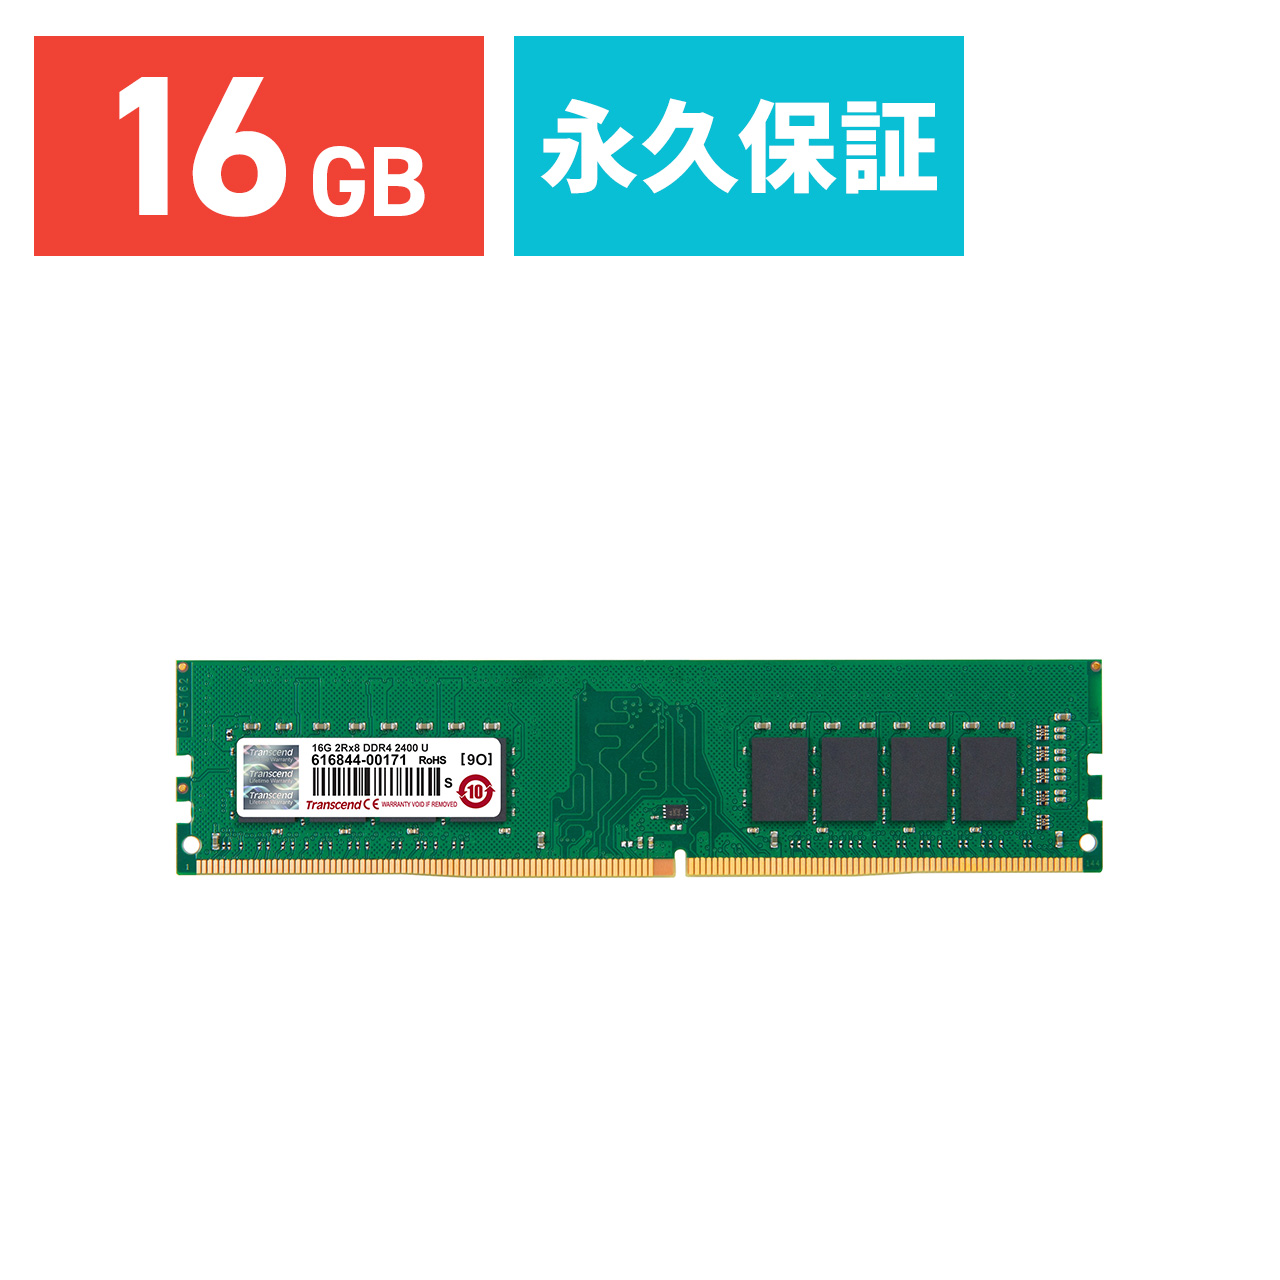 増設メモリ 16GB DDR4-2400 PC4-19200 DIMM TS2GLH64V4B